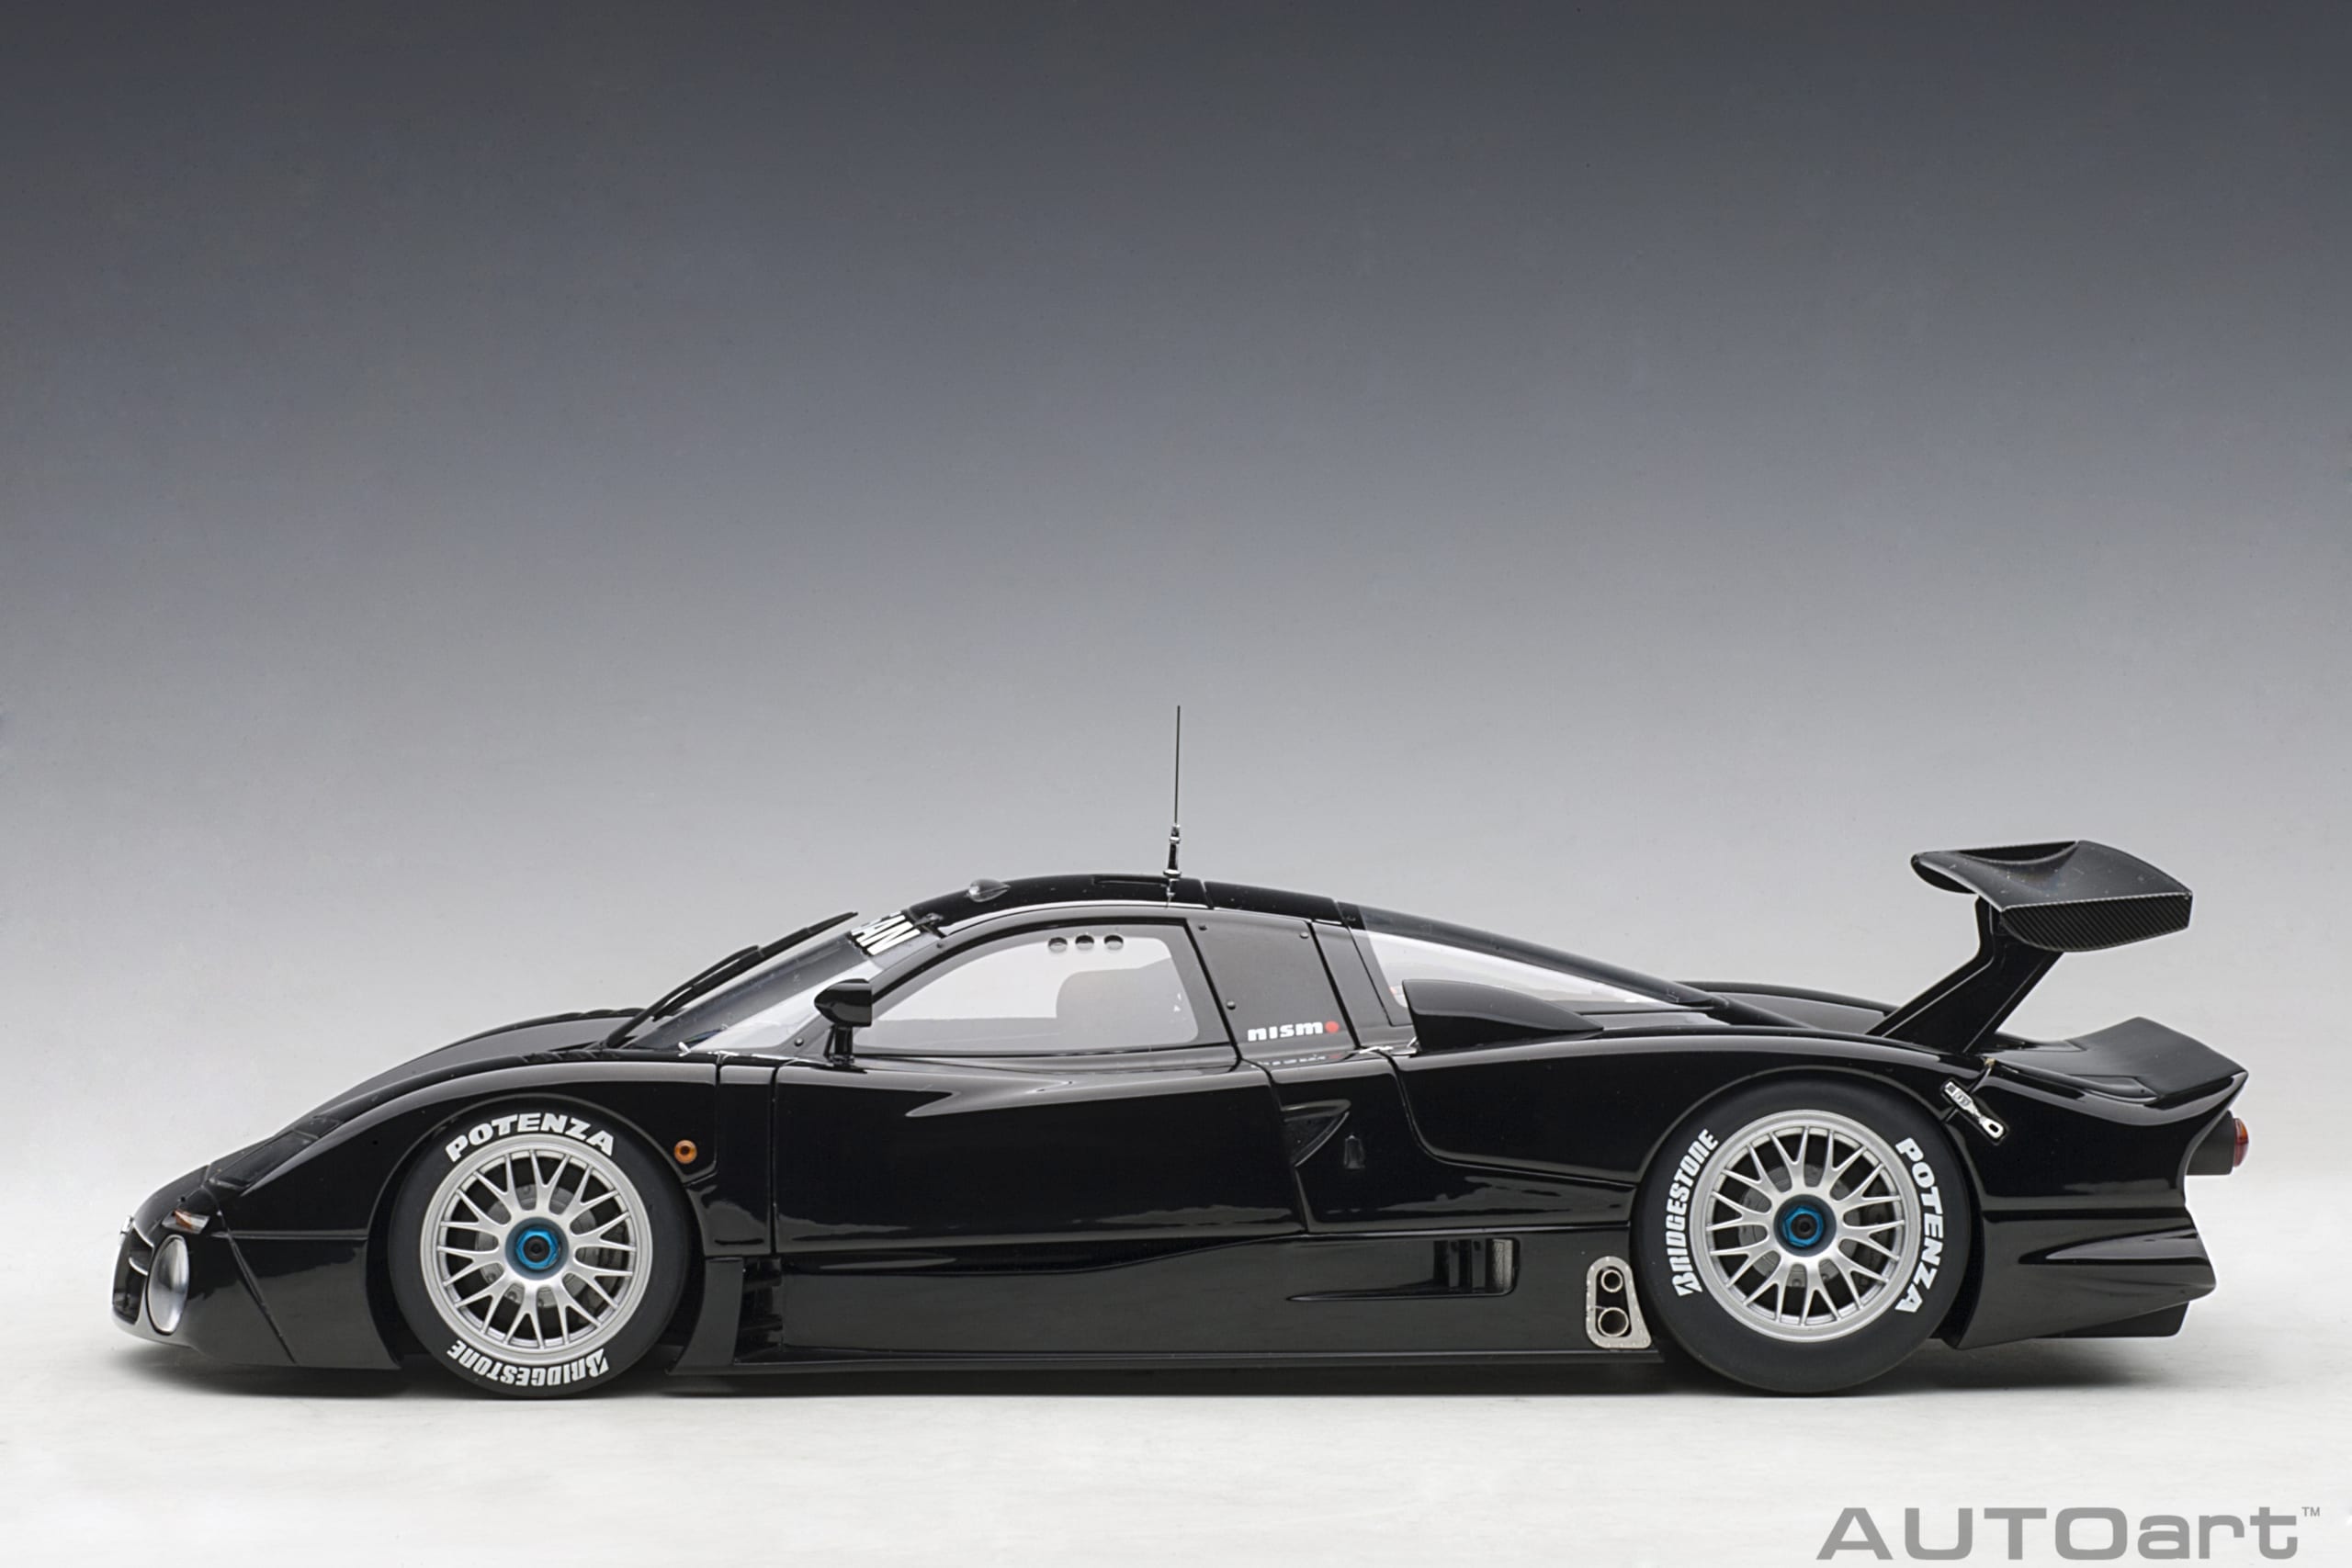 Nissan R390 GT1 Le Mans Plain Body Version (Black) | AUTOart